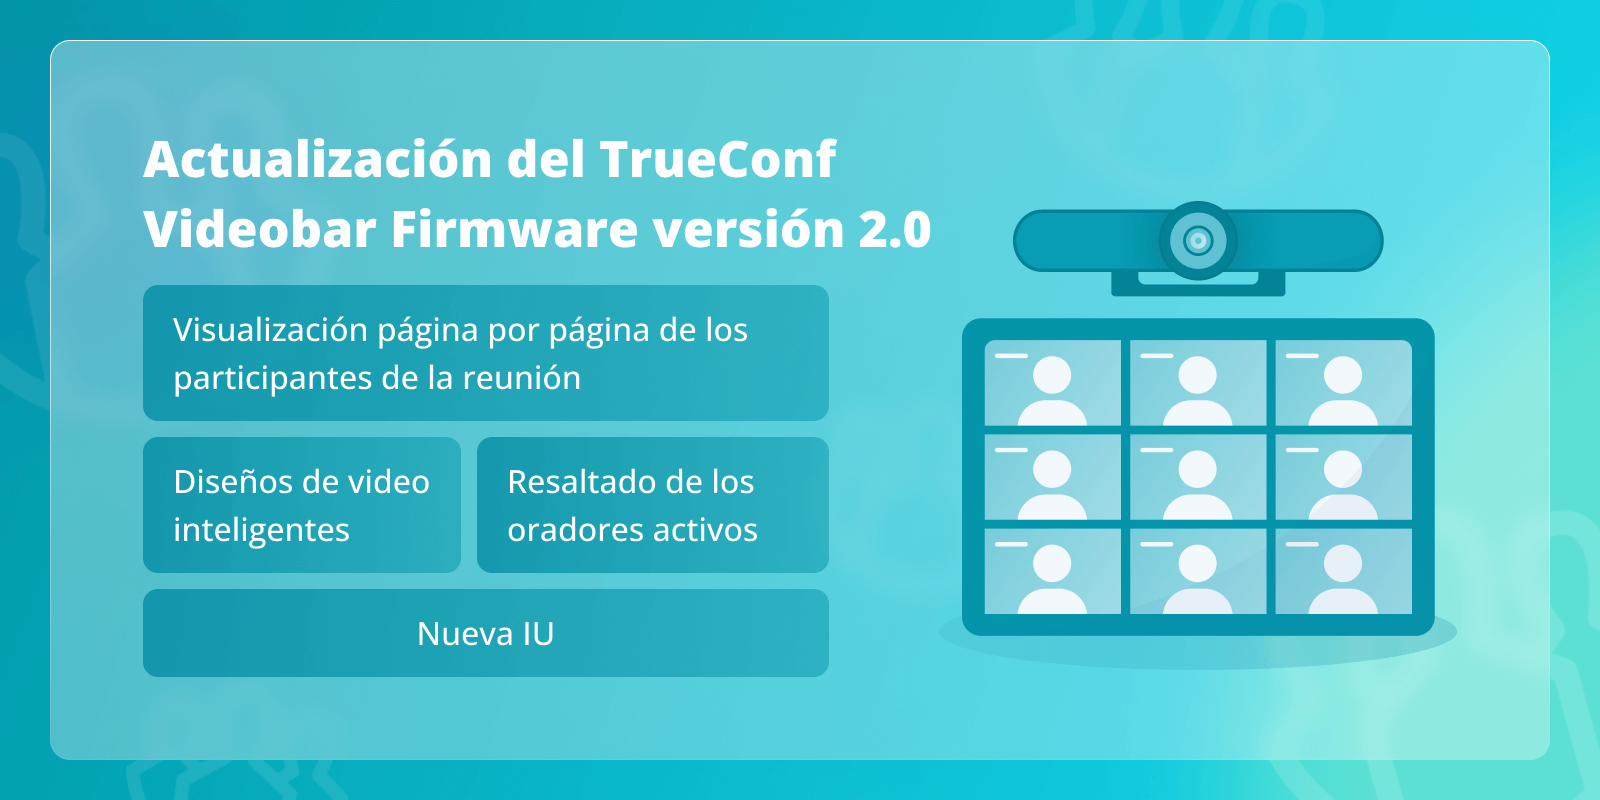 TrueConf Videobar 2.0: nueva interfaz de usuario (IU), resaltado de orador activo y más 6